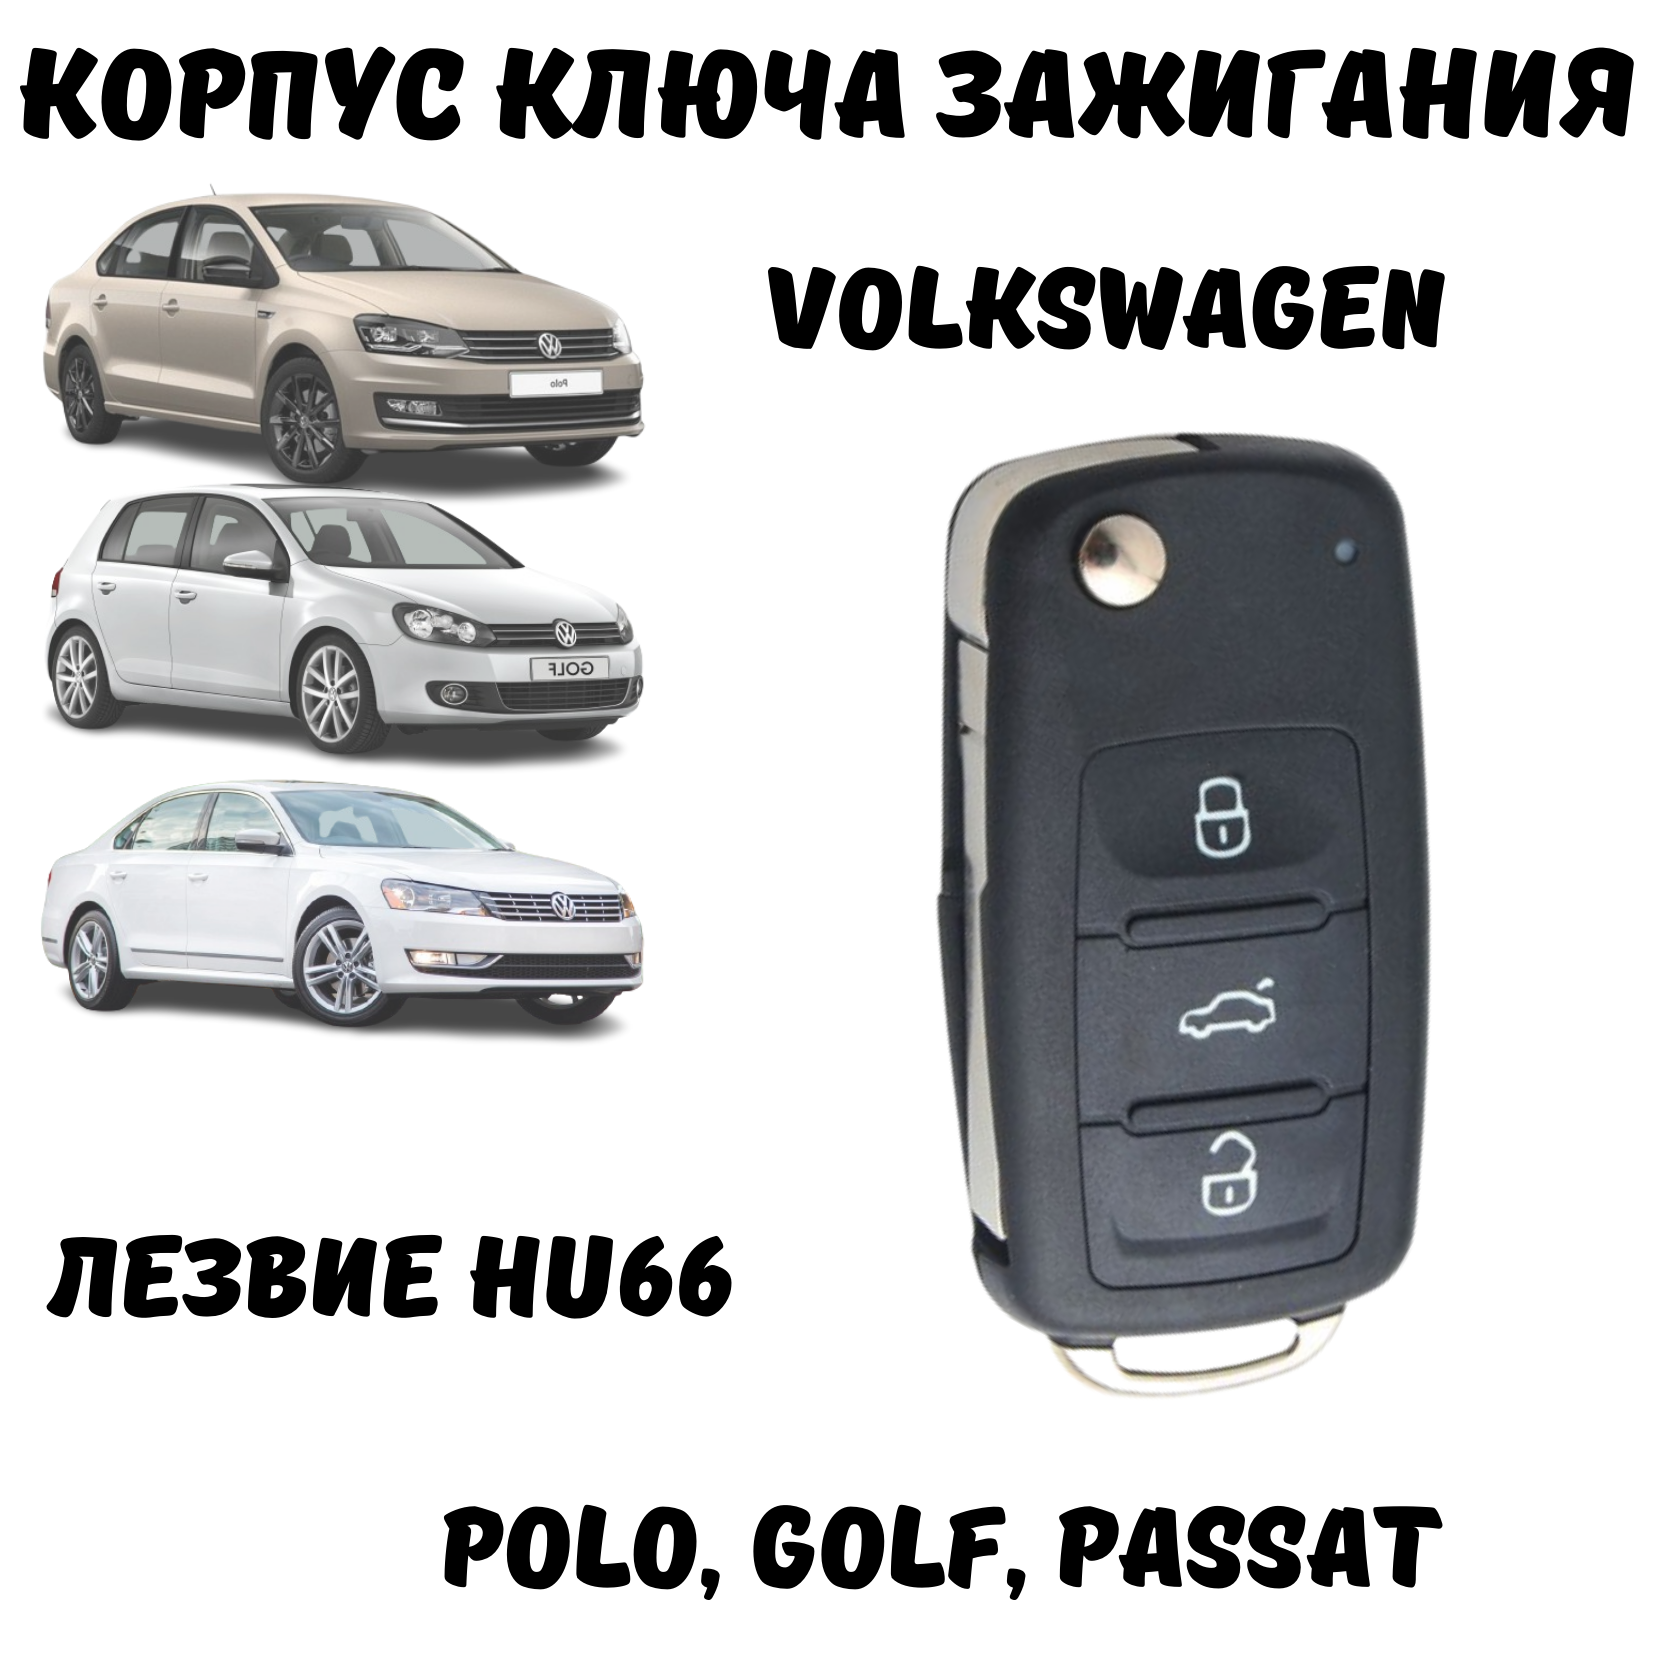 Корпус для ключа зажигания Volkswagen Polo, Golf, Passat, лезвие HU66, 3 кнопки